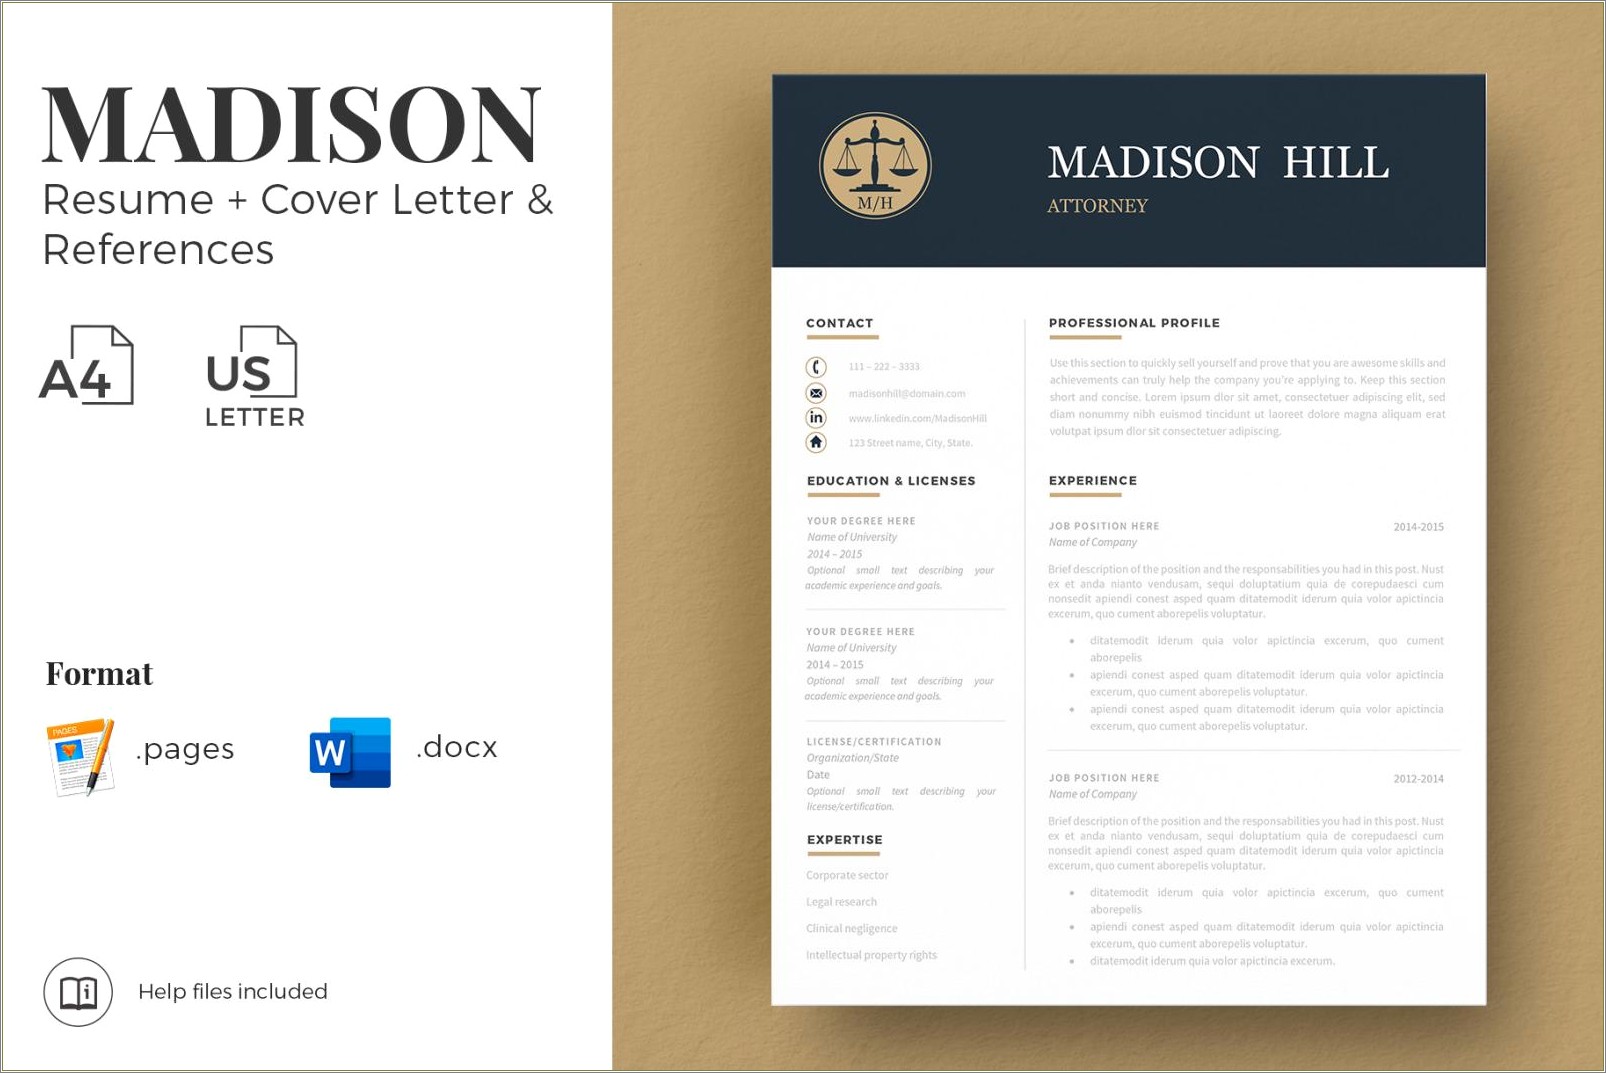 Sample Legal Cover Letter For Resume